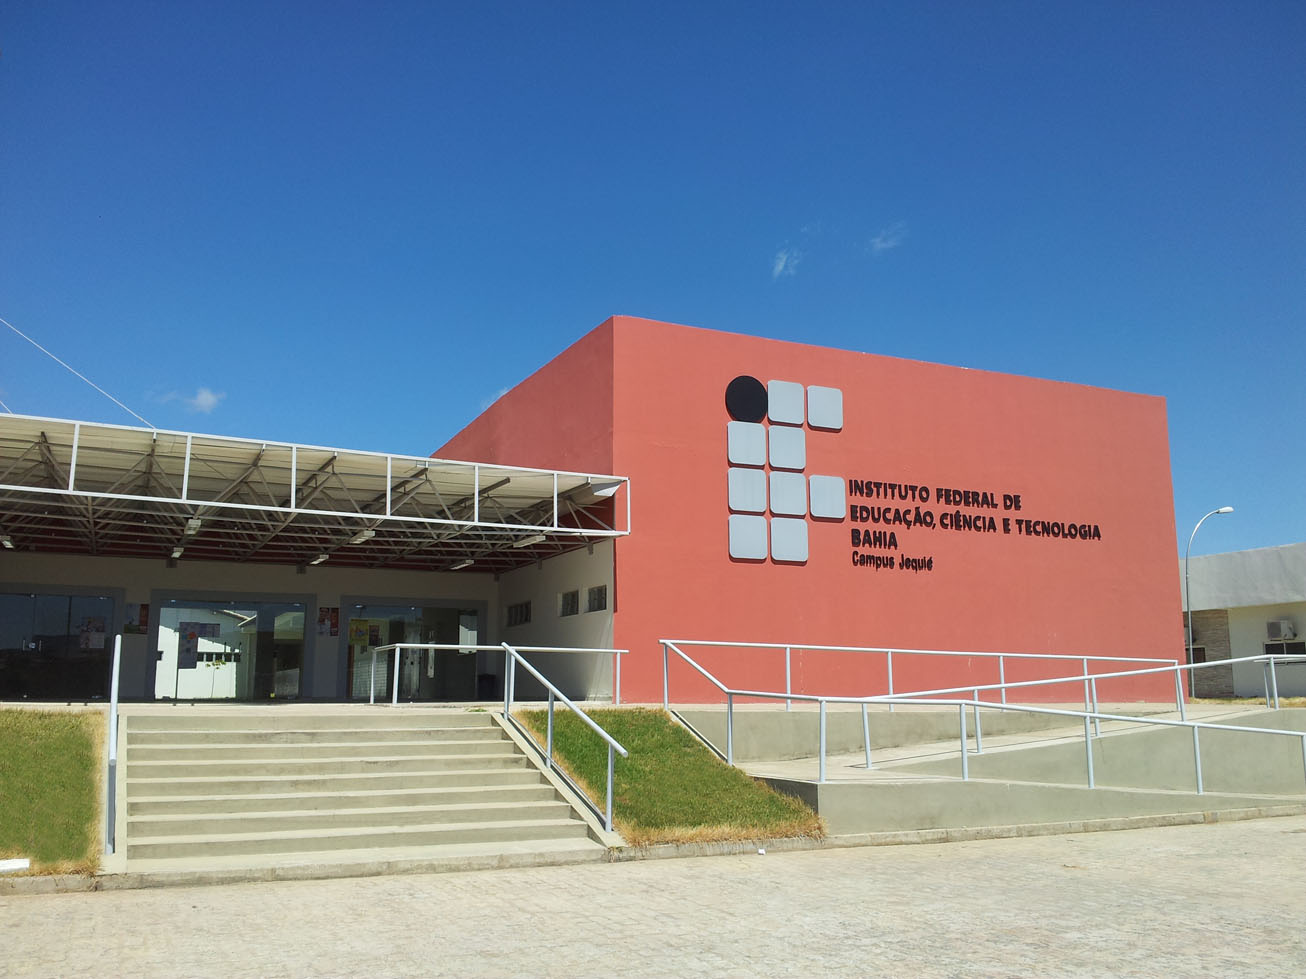 IFBA - Instituto Federal de Educação, Ciência e Tecnologia da Bahia  Instituto Federal da Bahia